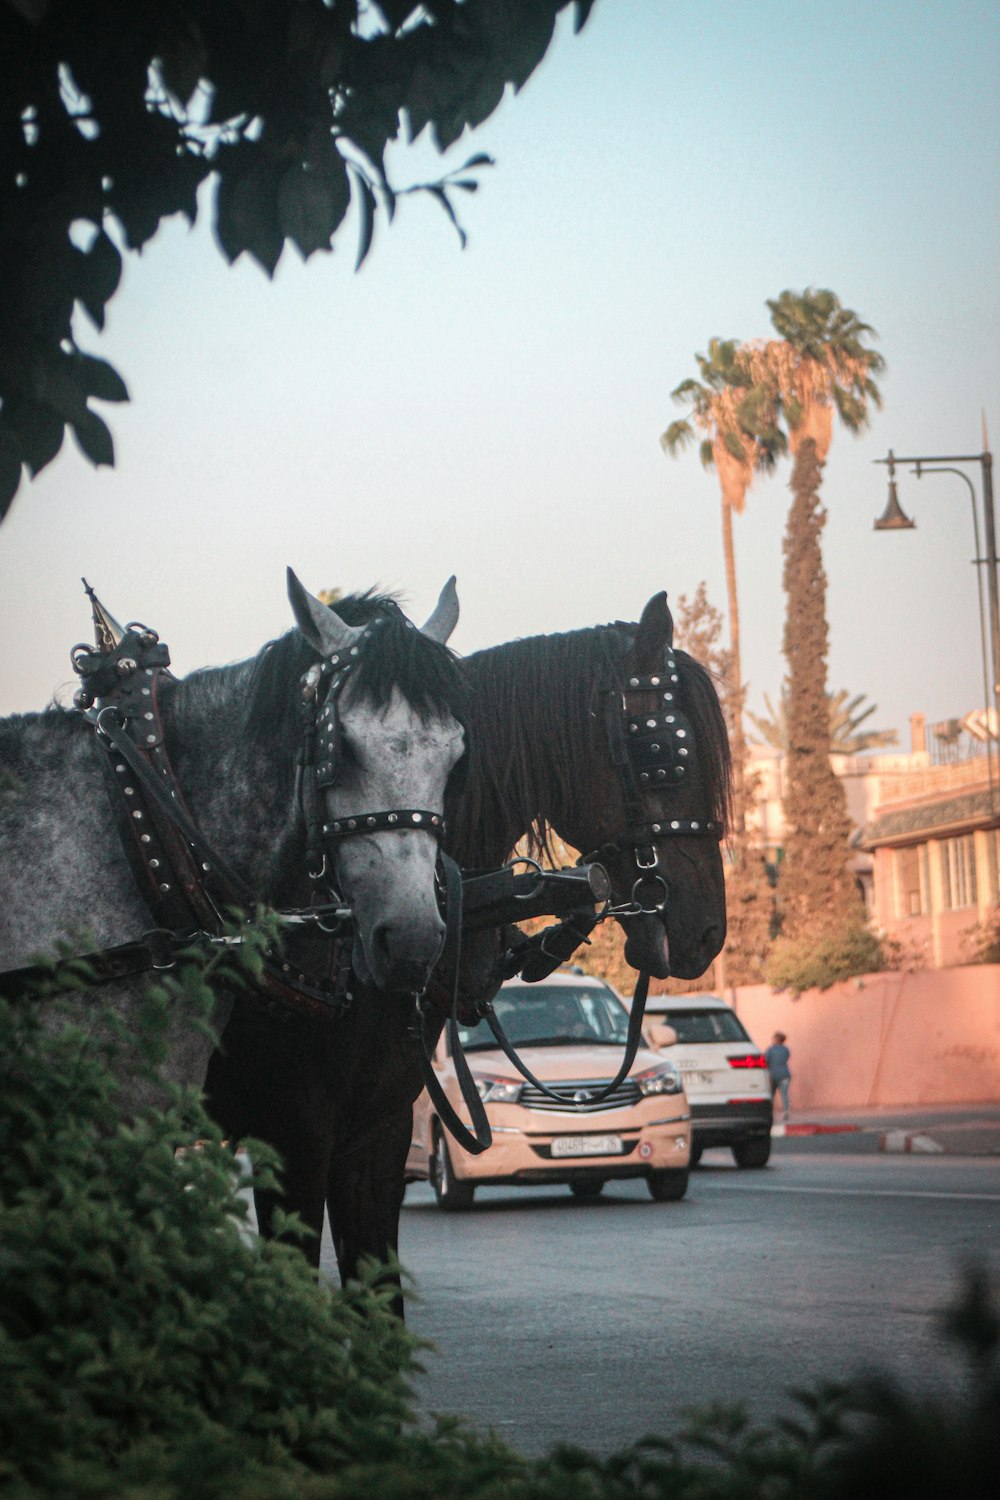 horses pulling a car